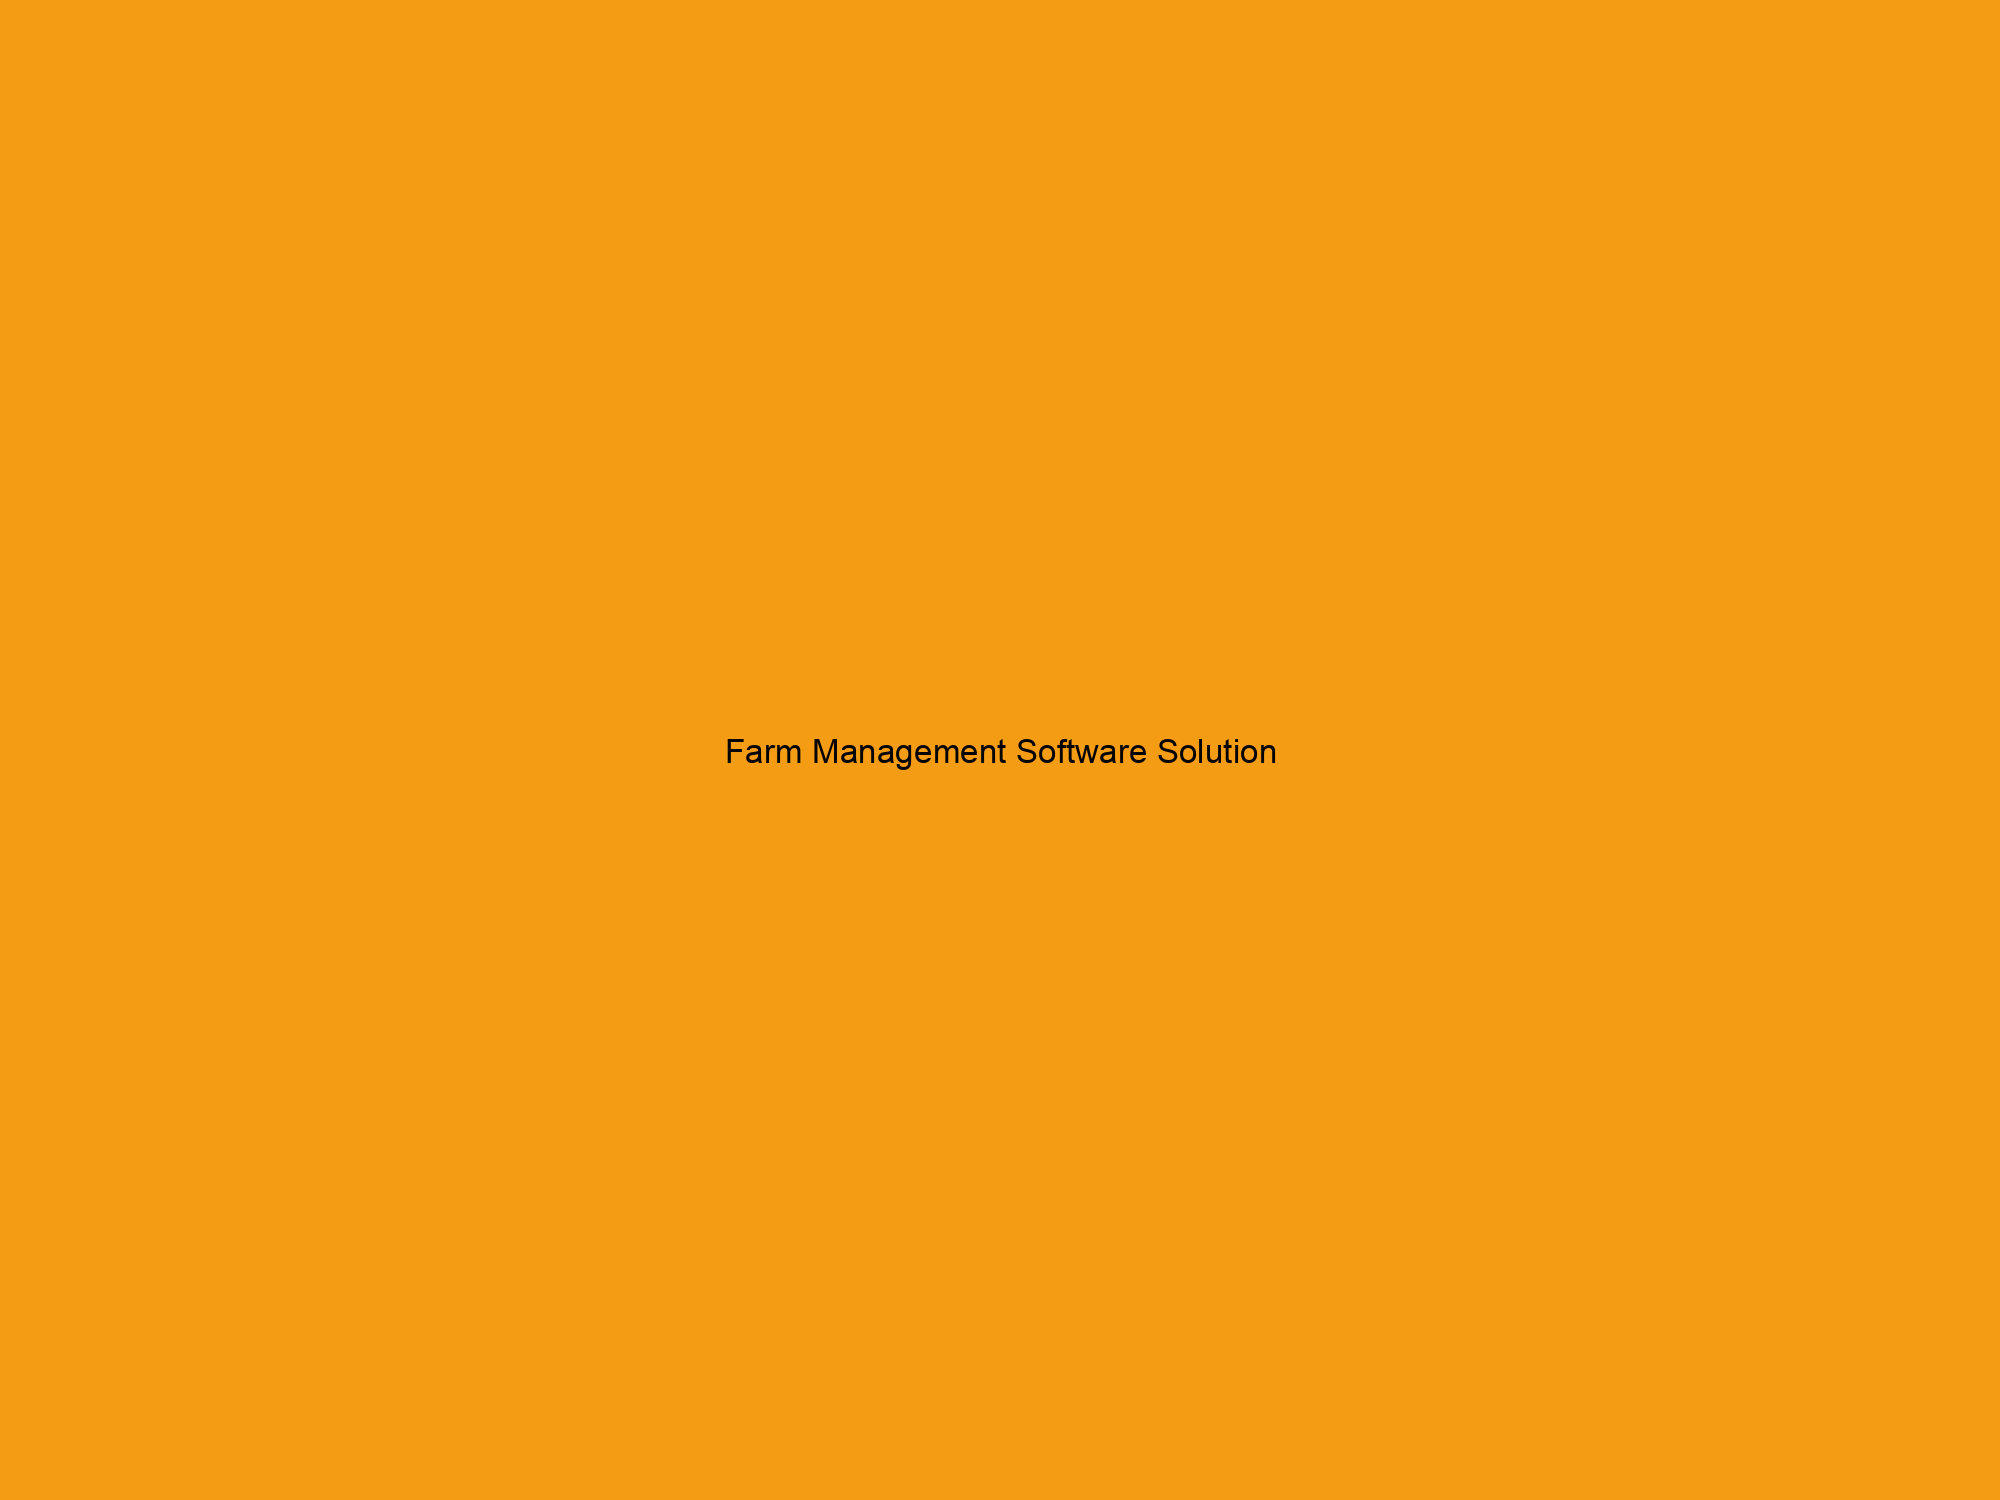 Farm Management Software Solution